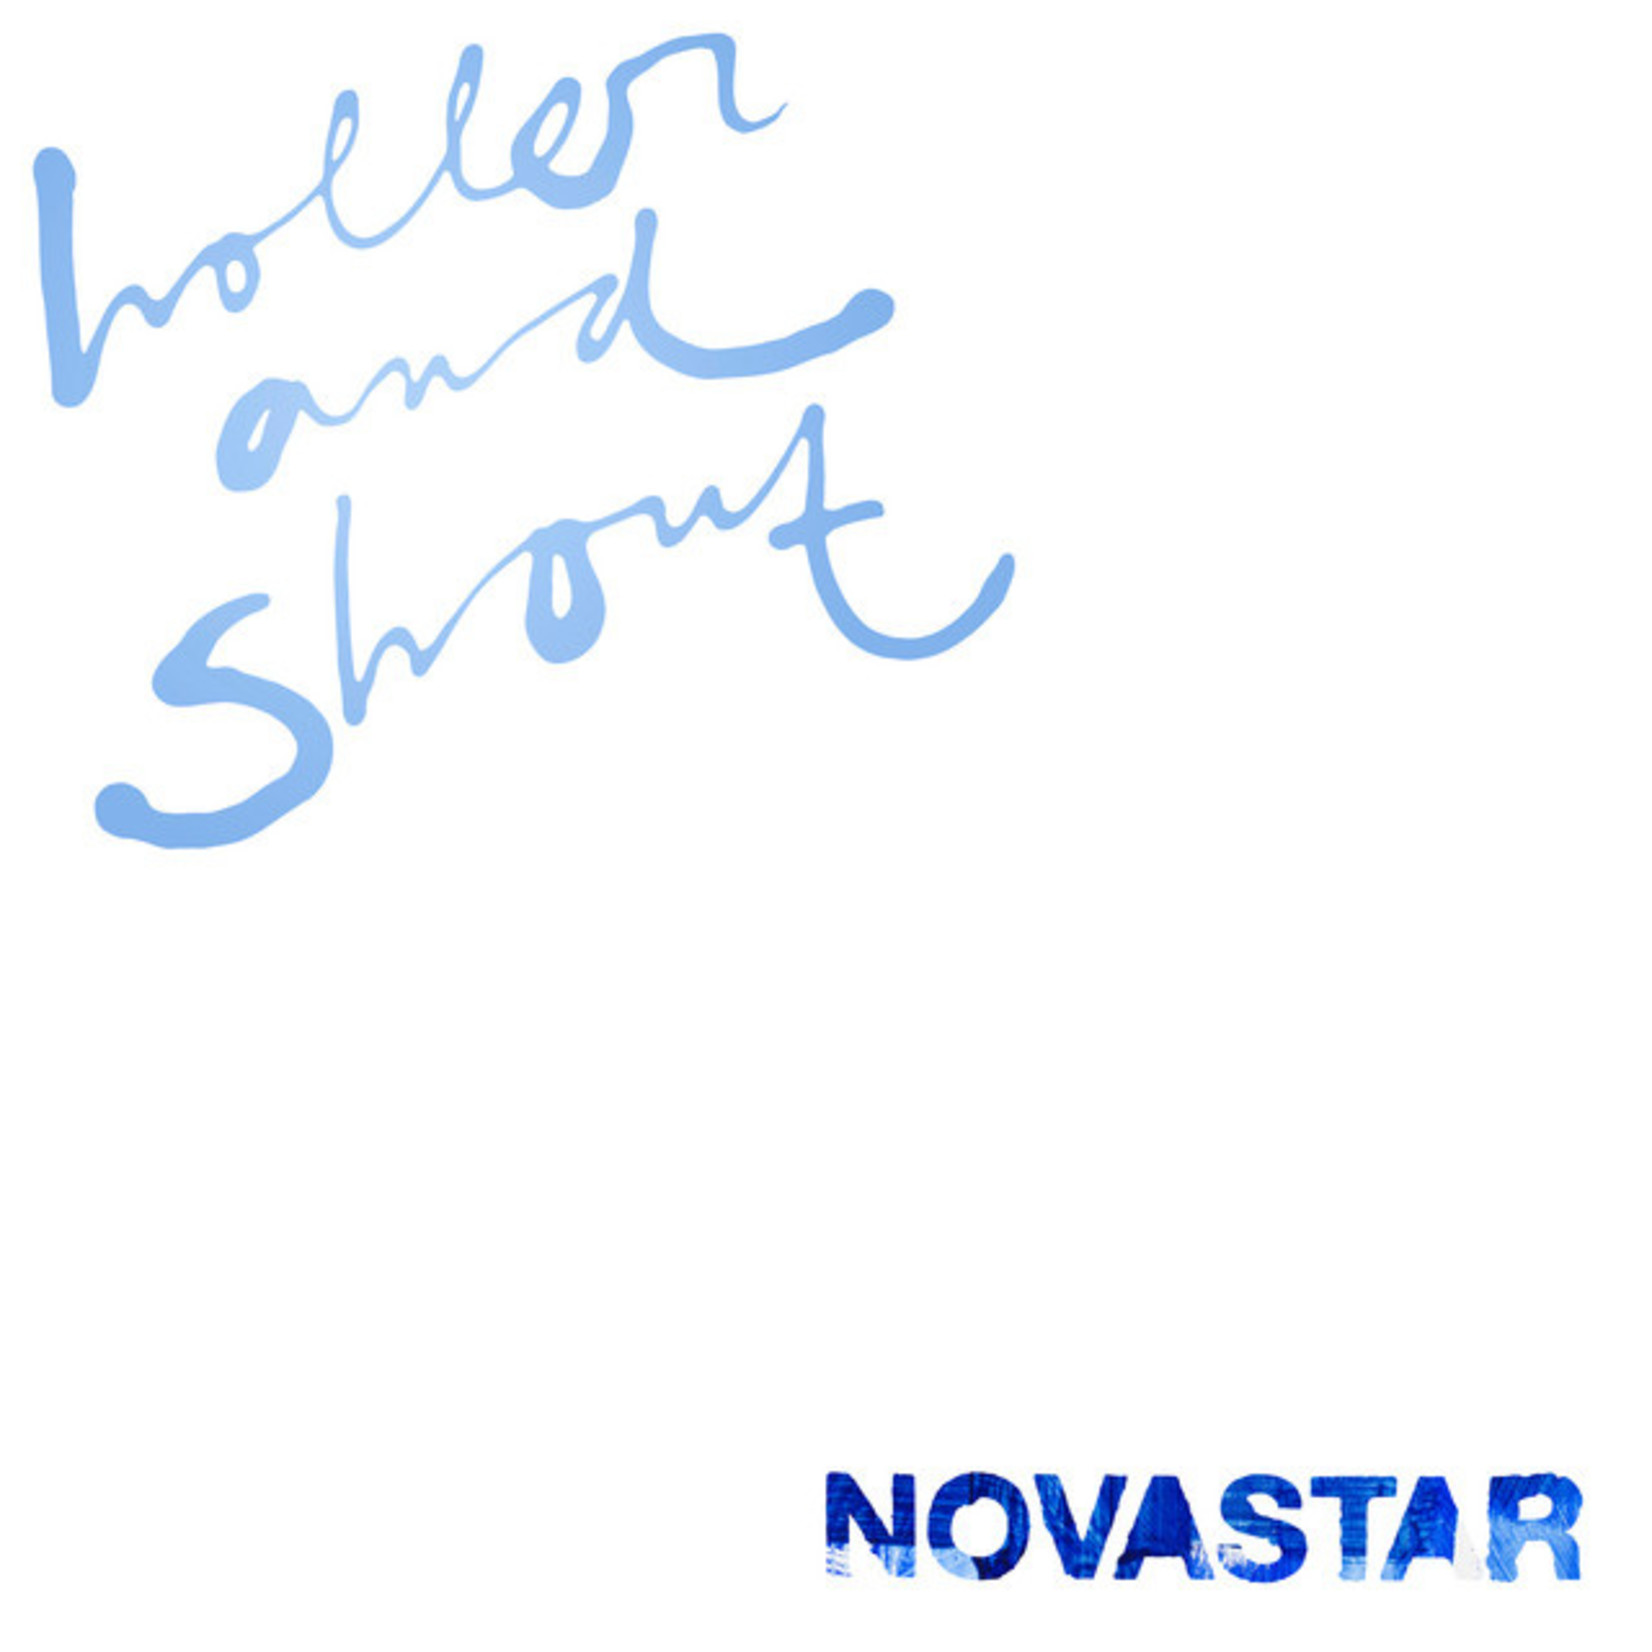 Novastar – Holler And Shout